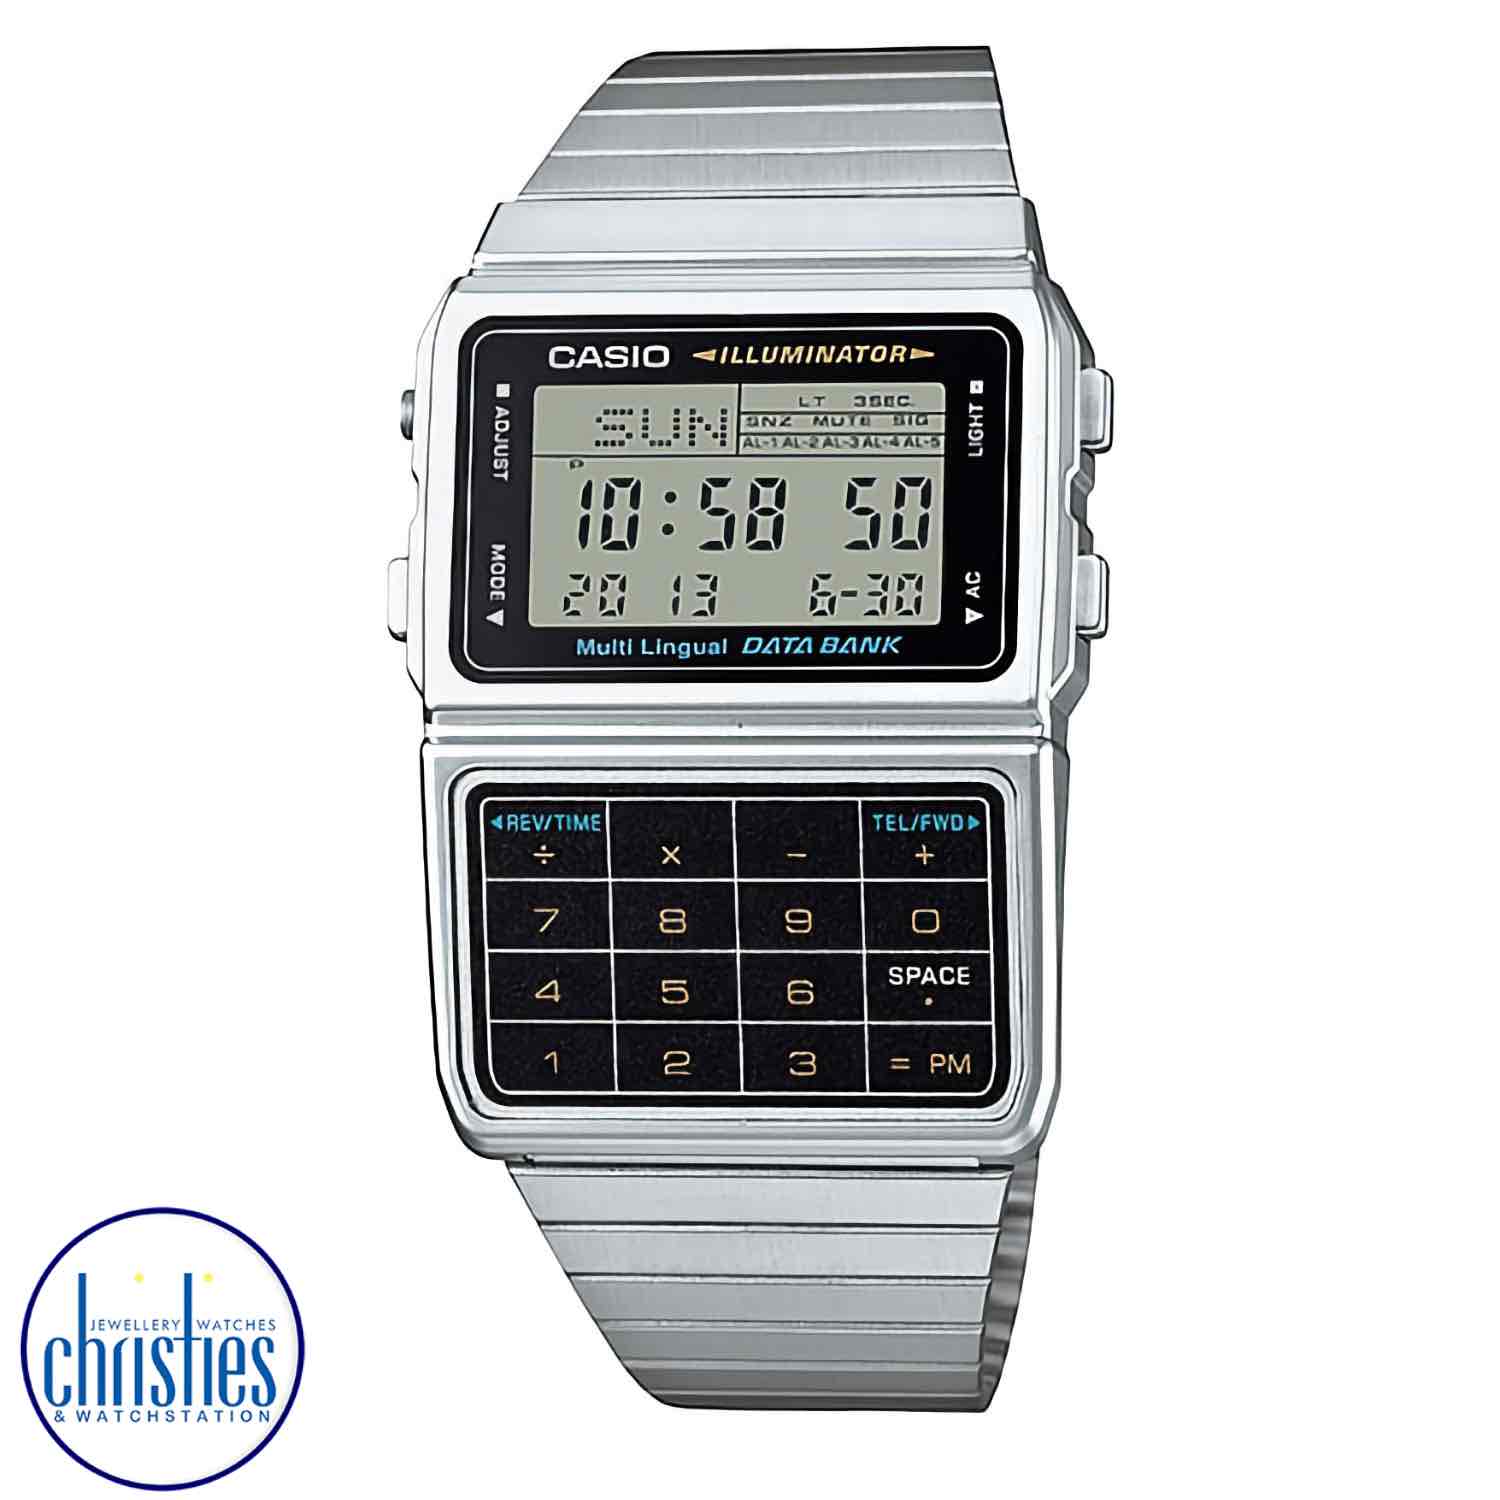 DBC-611-1 Casio Calculator Data Bank Watch .casio watches nz sale $119.00